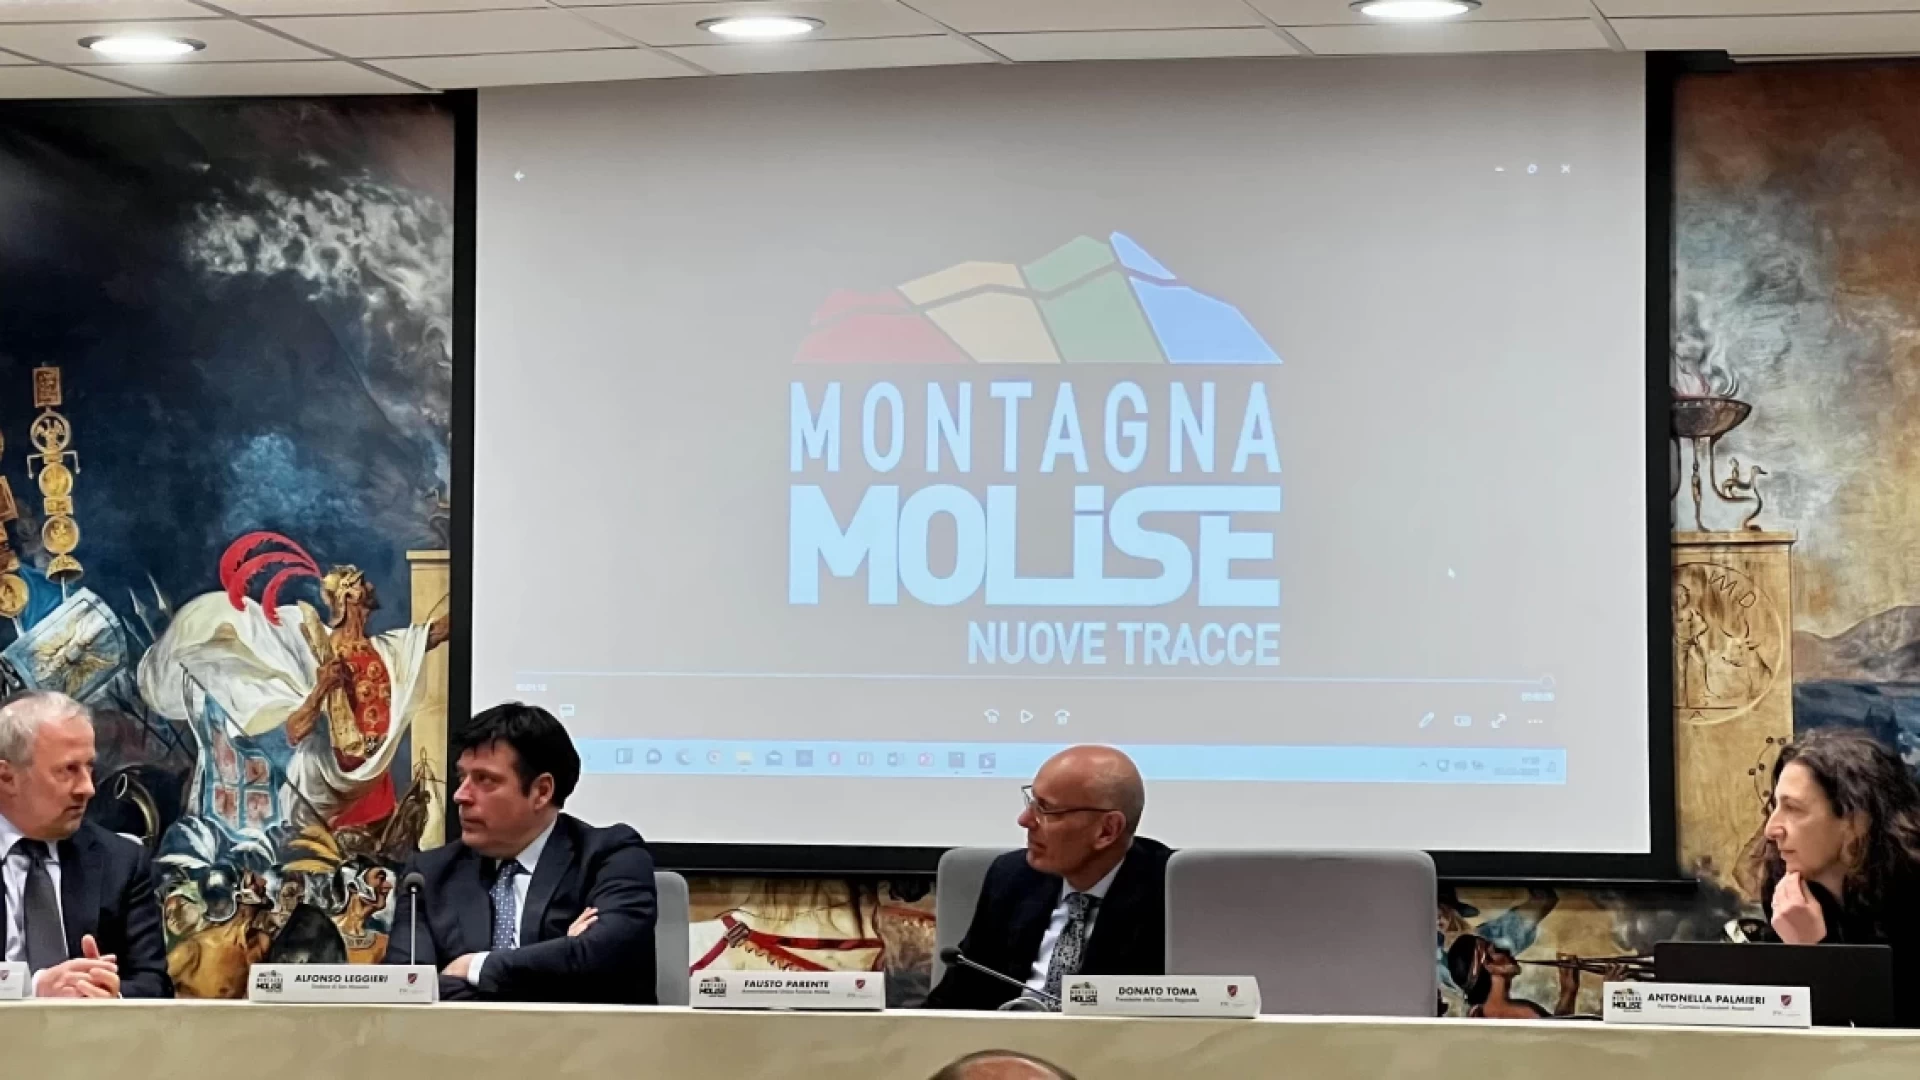 Montagna Molise: gli appuntamenti di settembre tra Campitello e Capracotta.